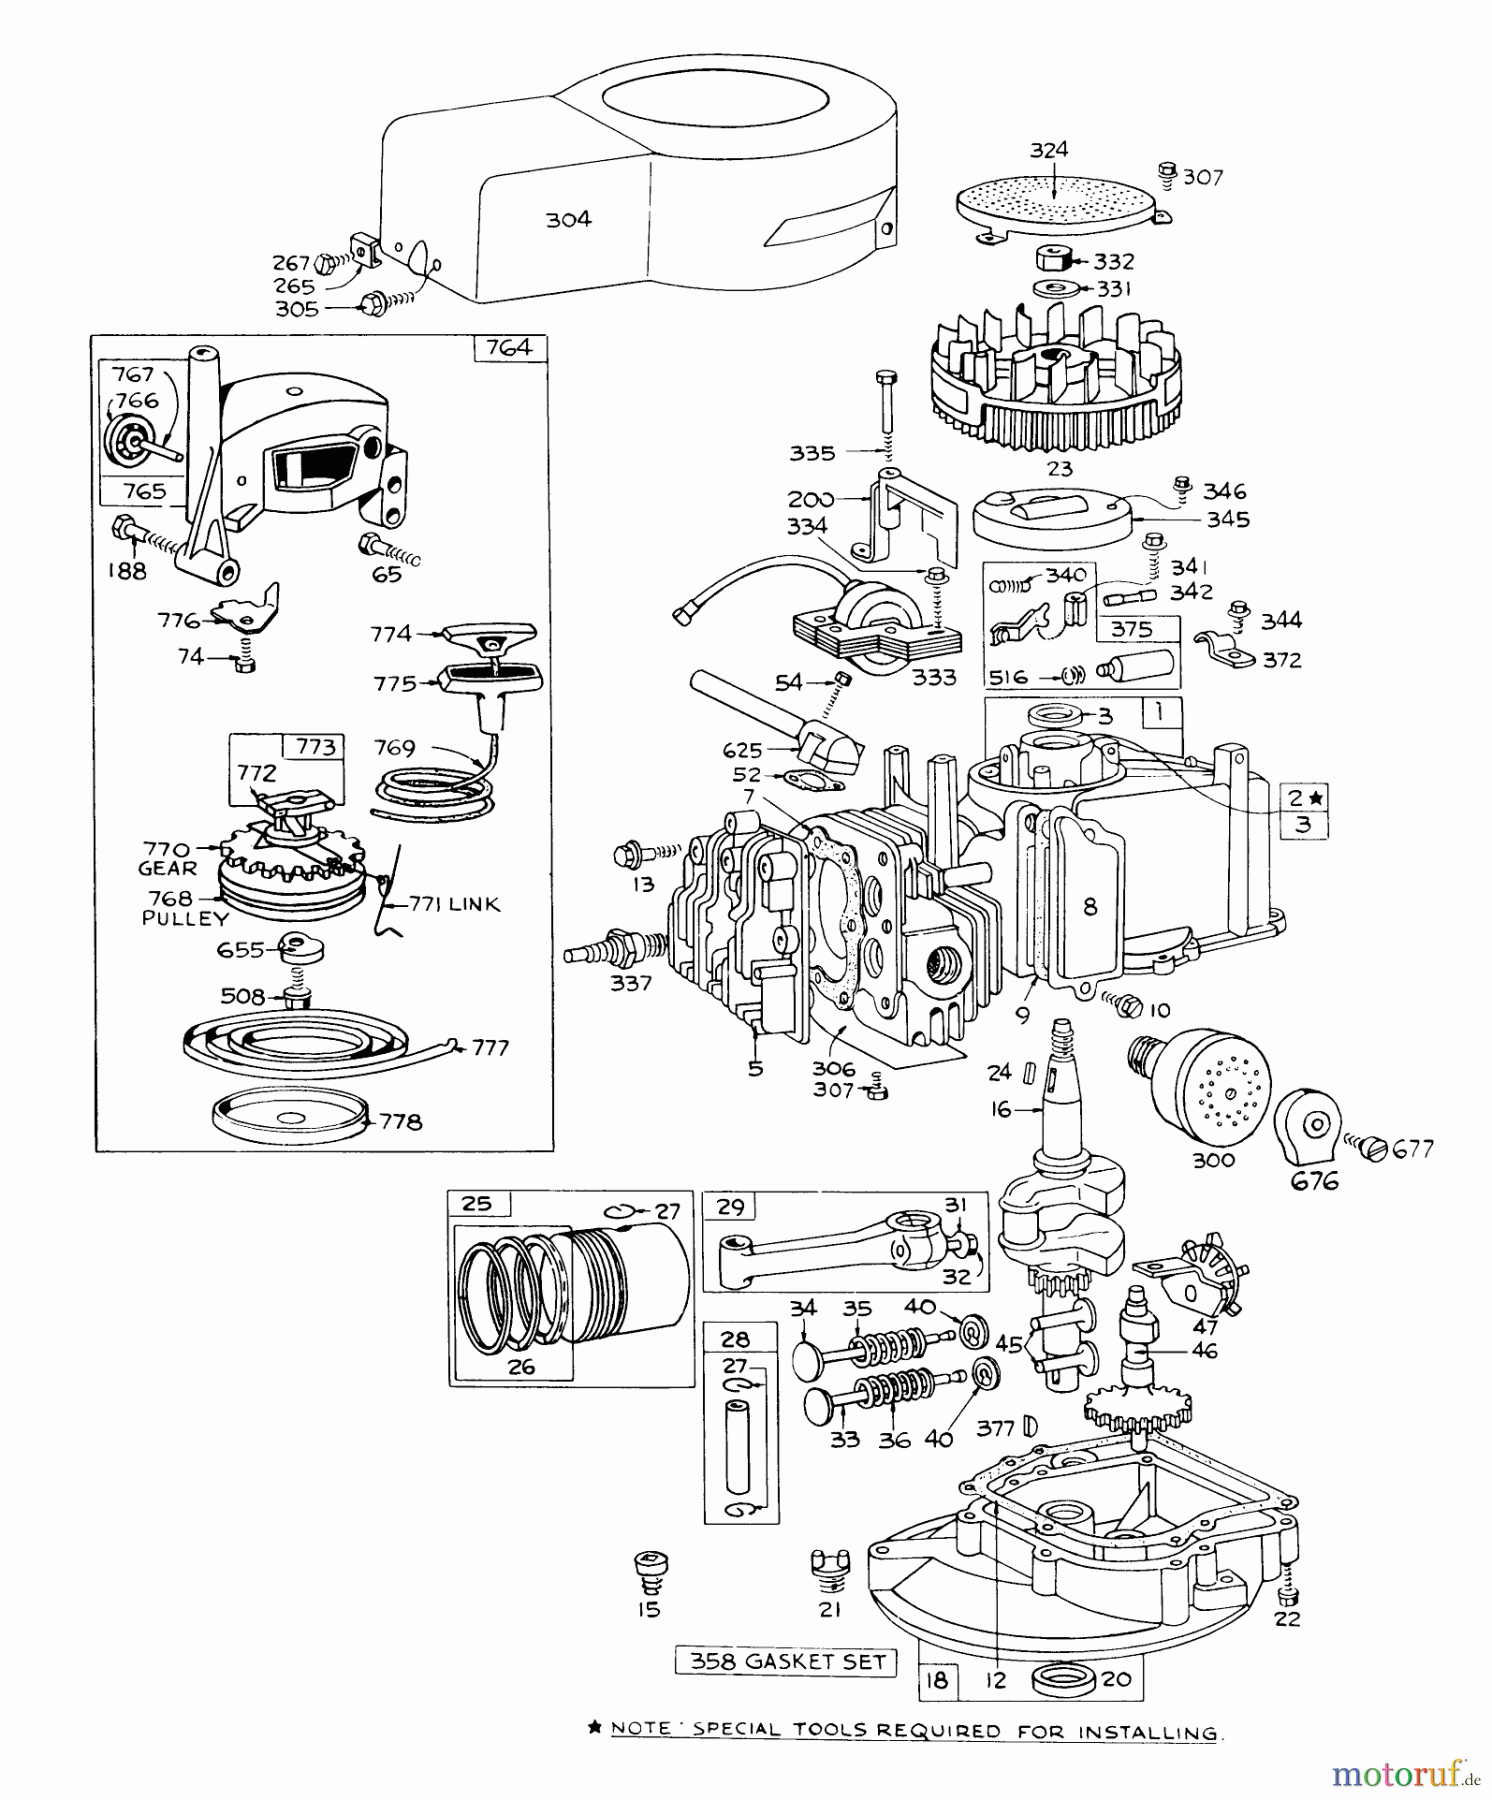  Toro Neu Mowers, Walk-Behind Seite 1 16273 - Toro Whirlwind Lawnmower, 1973 (3000001-3999999) ENGINE BRIGGS & STRATTON - MODEL 92508-0844-01 FOR 19